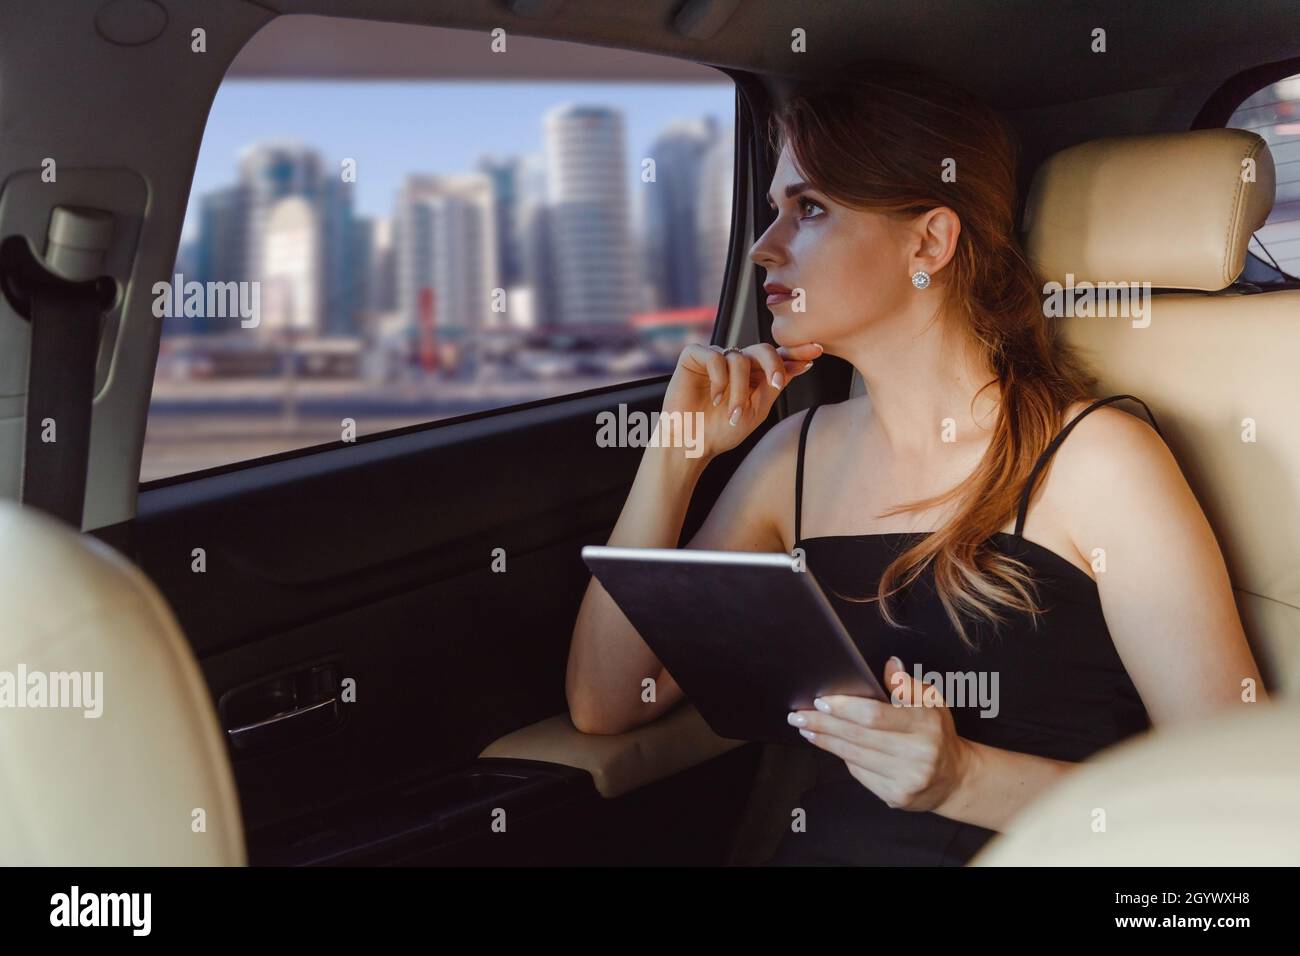 supporto tablet che vincola il tablet al volante dell'auto